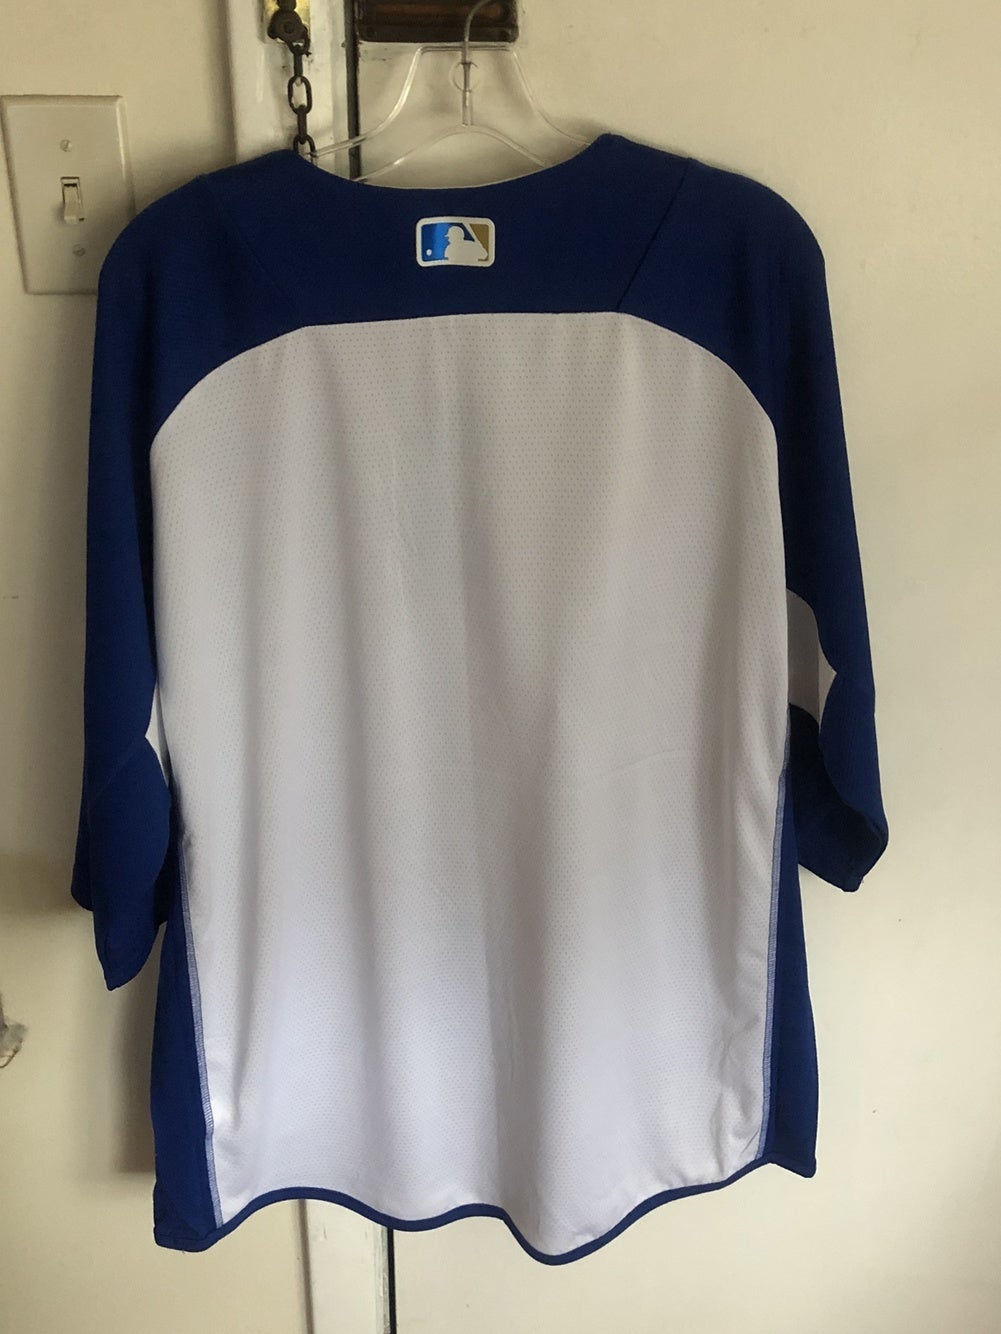 Majestic MLB Mens Kansas City Royals Baseball Blue Shirt NWT S